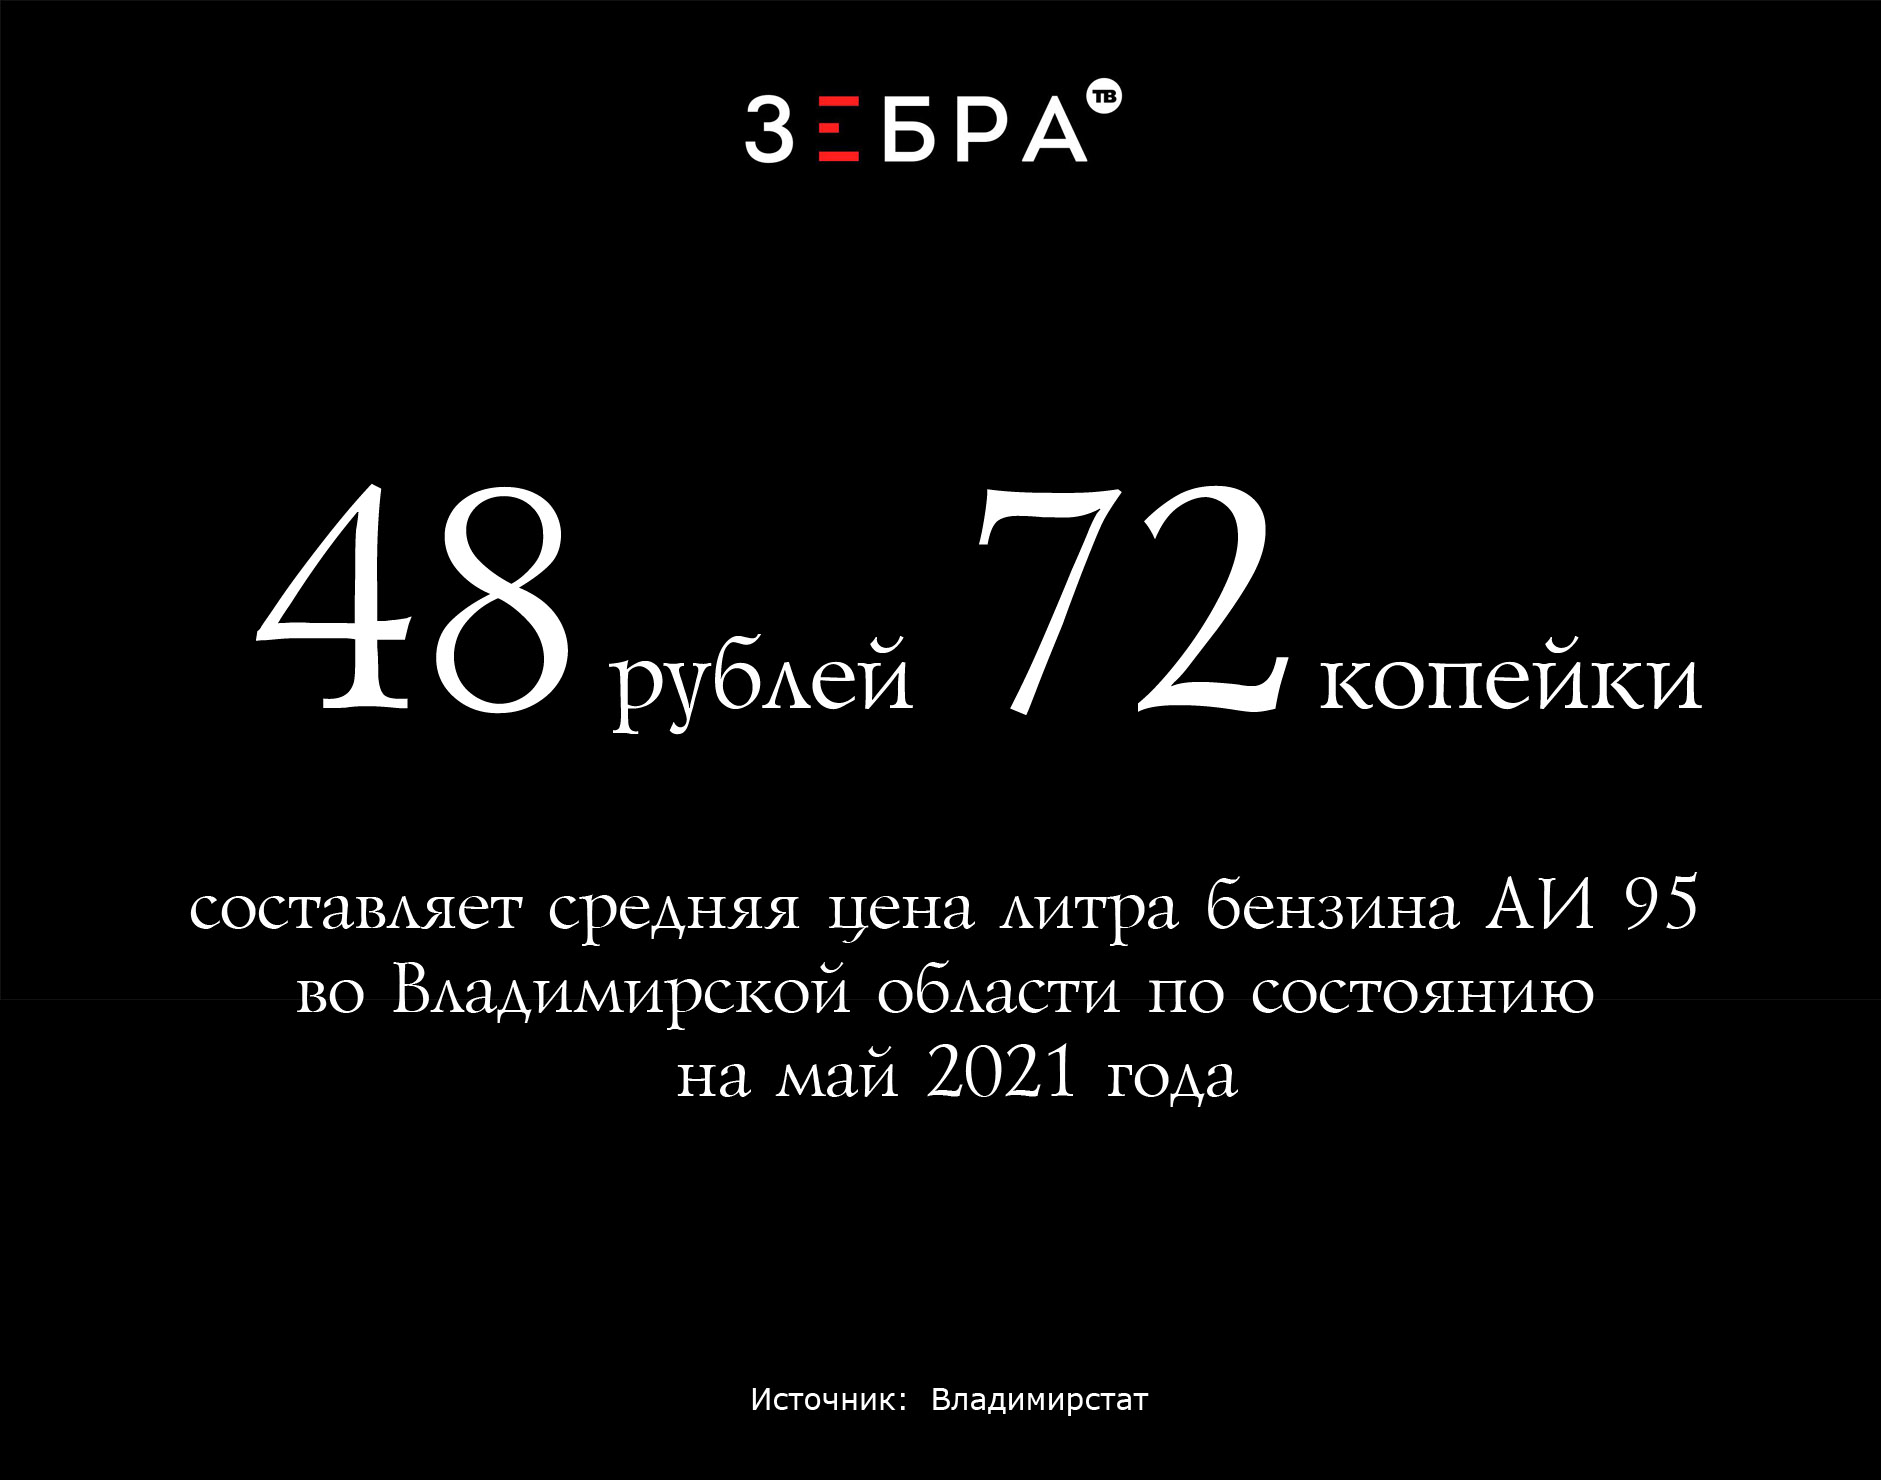 48 рублей 72 копейки составляет средняя цена литра бензина АИ 95 во Владимирской области по состоянию на май 2021 года. Источник: Владимирстат